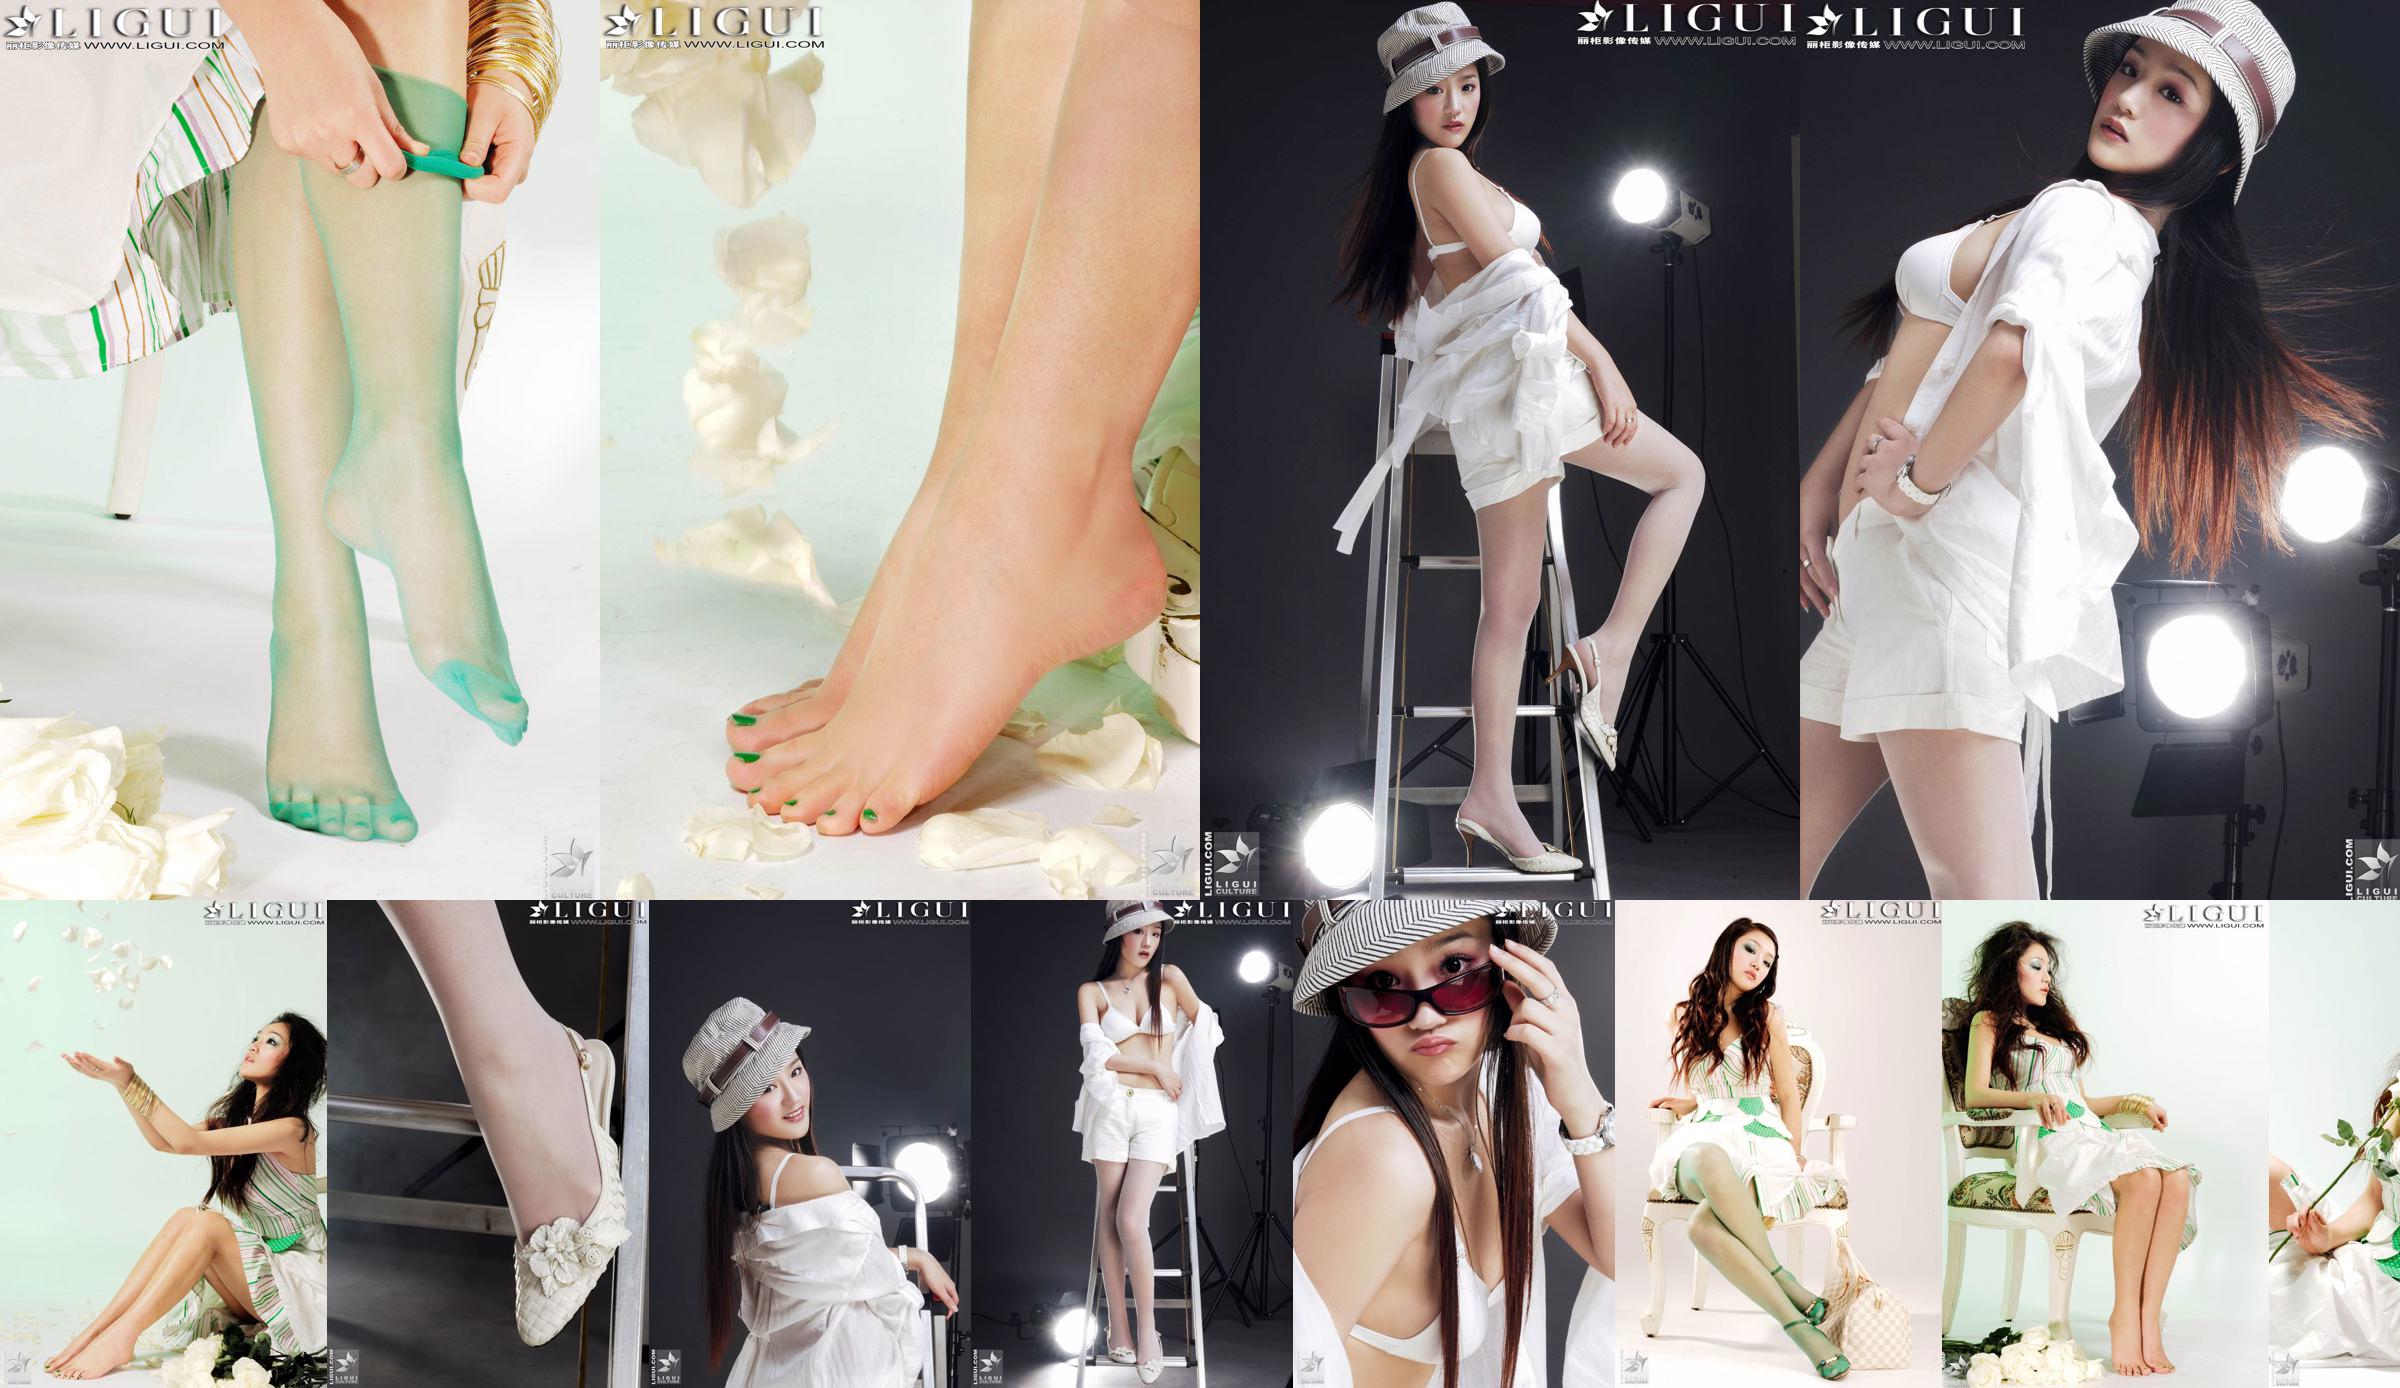 [丽柜贵足LiGui] Model Zhang Jingyan's "Fashionable Foot" photo of beautiful legs and silk feet No.64065c Page 13